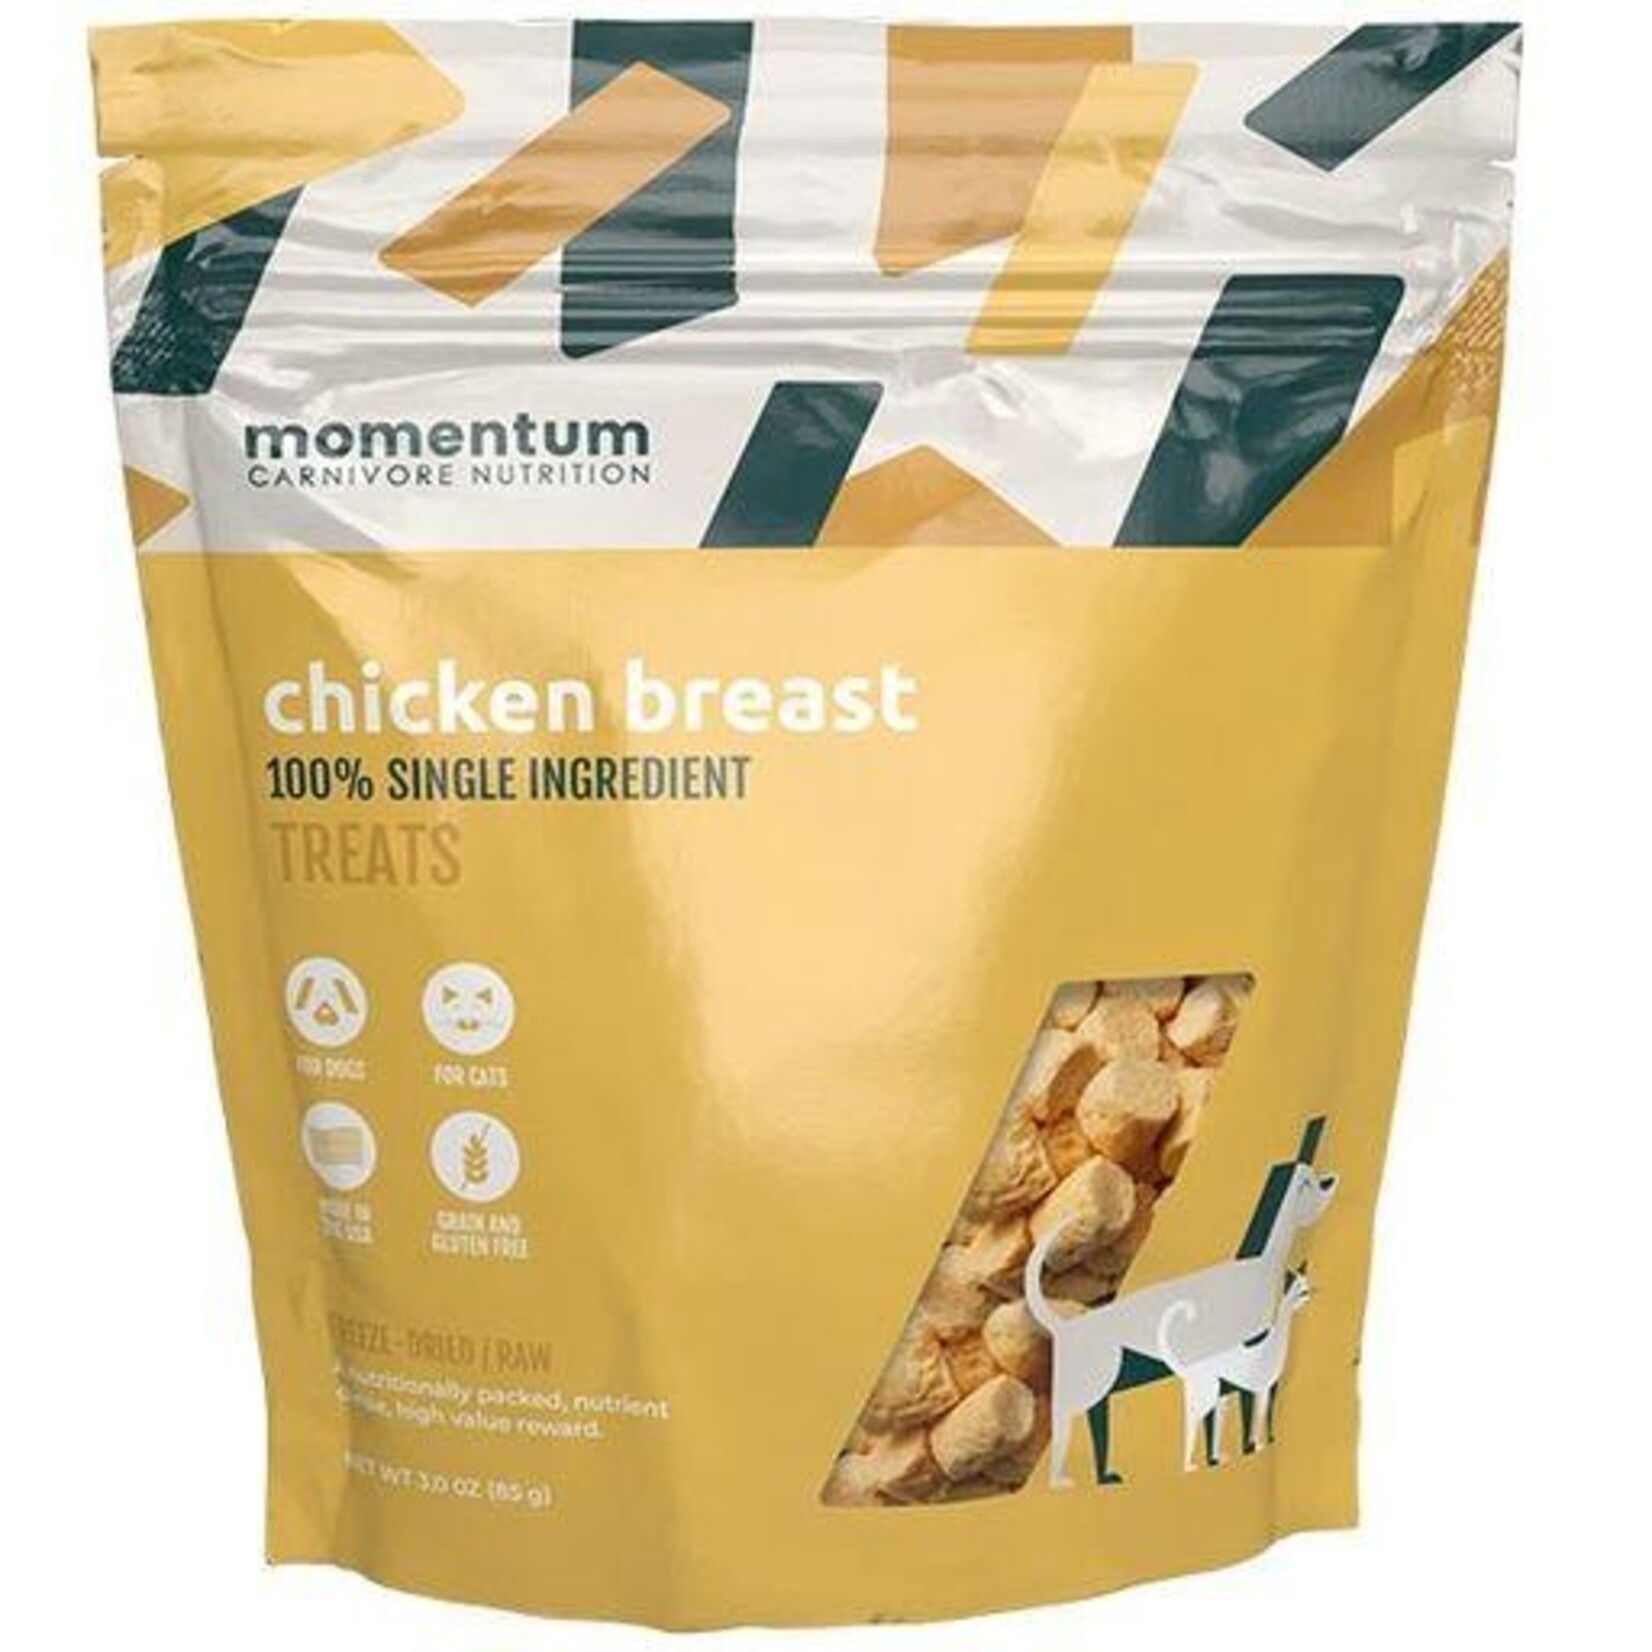 Momentum Carnivore Nutrition 3 oz. - Chicken Breast - Freeze Dried Treats - Momentum / Moretti's